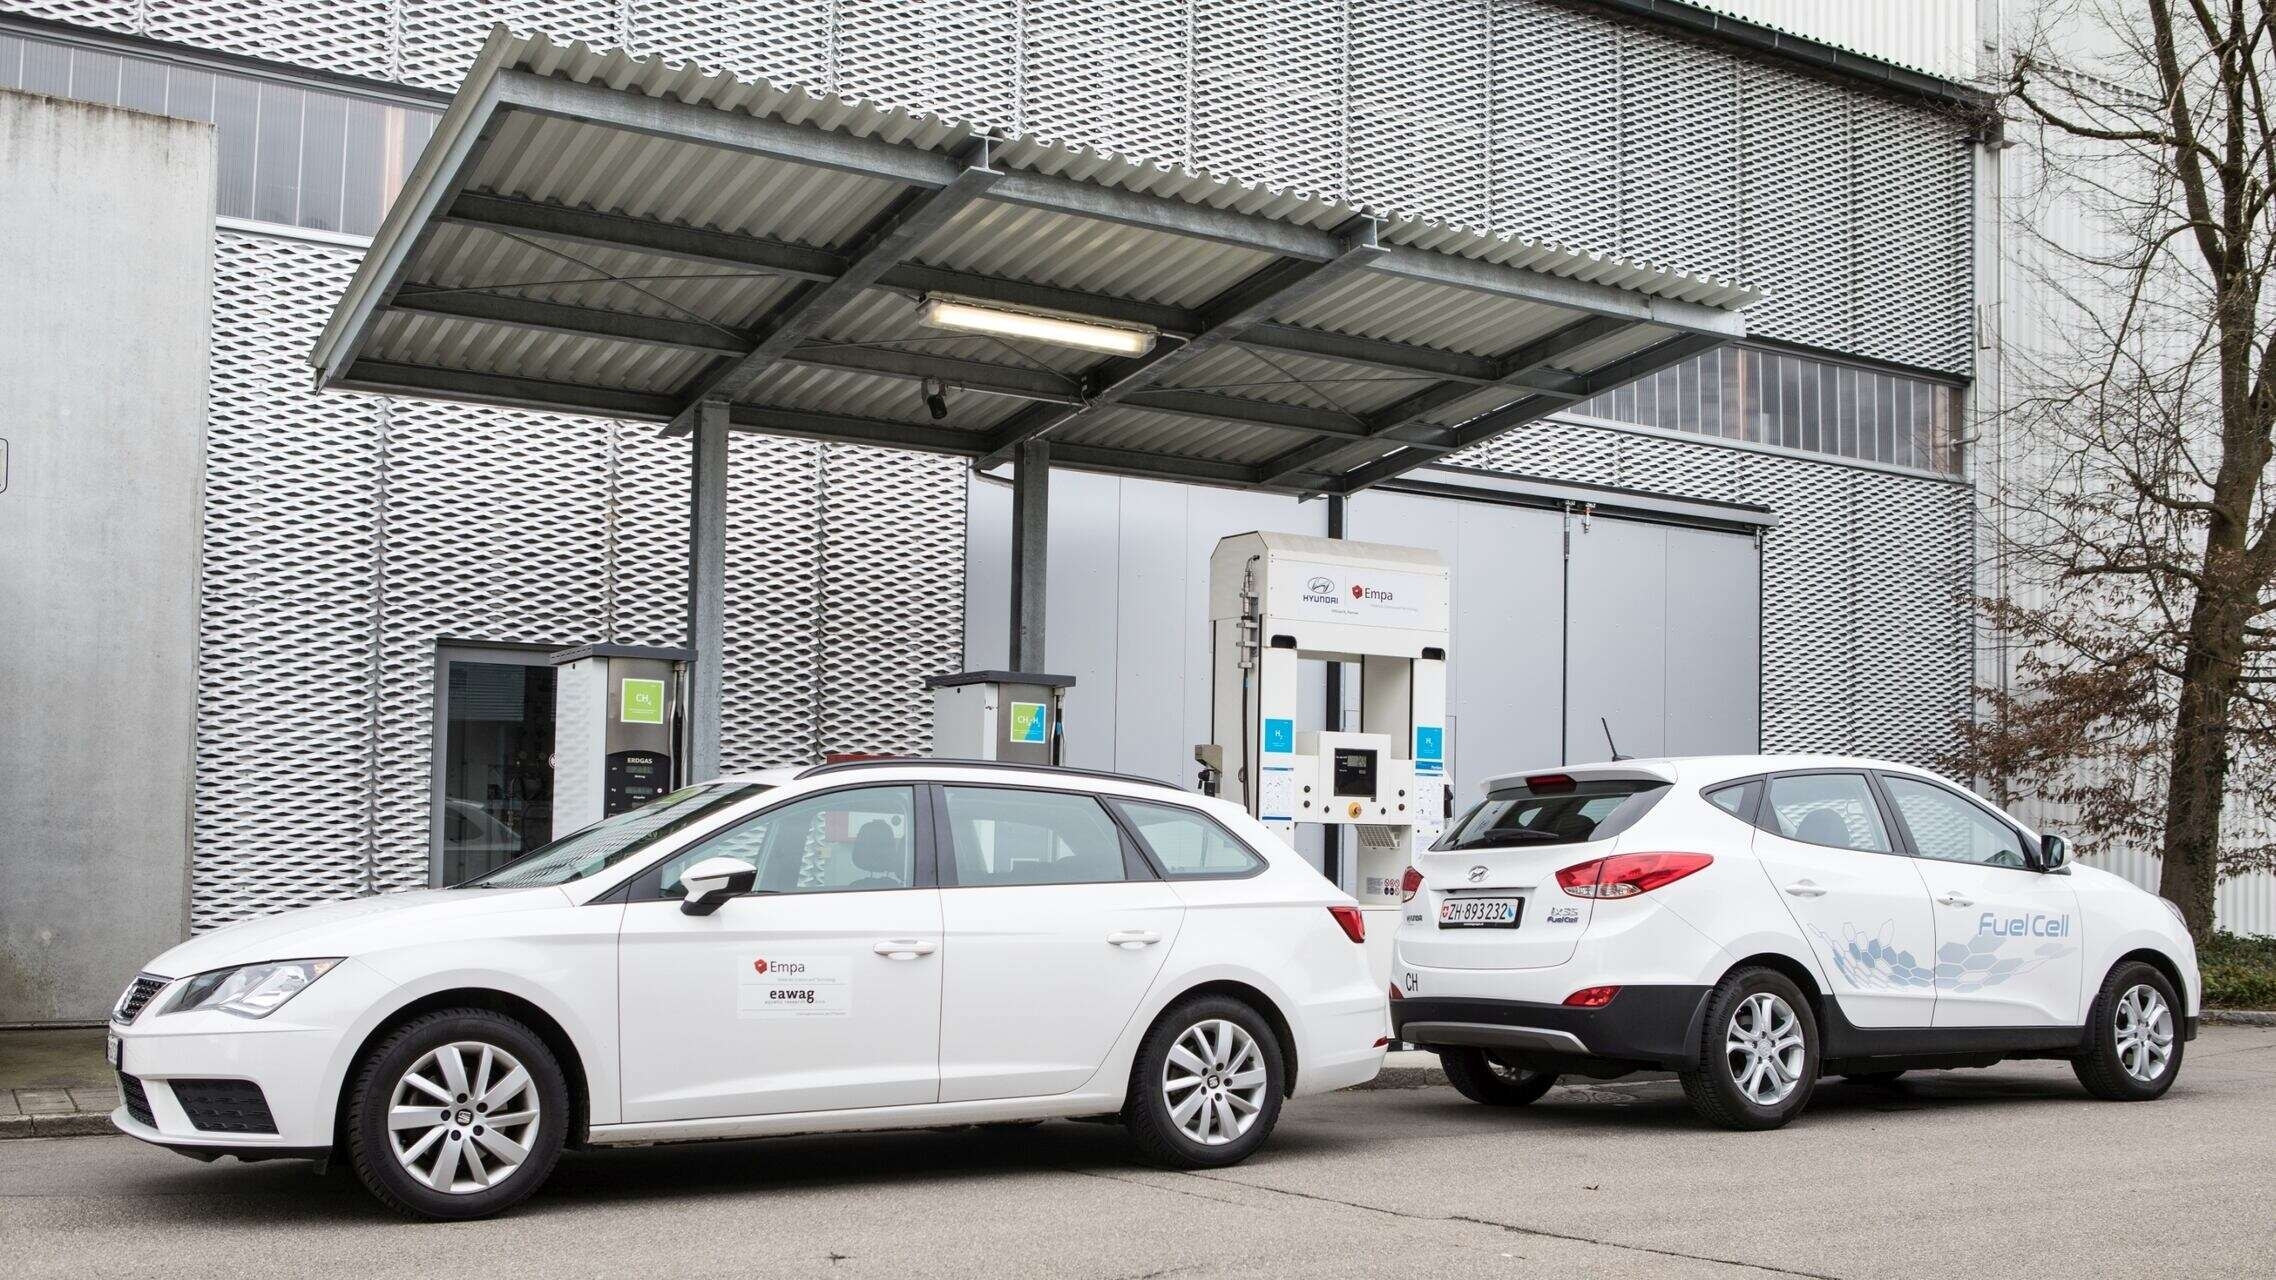 Ηλεκτρική κινητικότητα: Πώς συγκρίνονται τα οχήματα CNG με τα οχήματα κυψελών καυσίμου και τα ηλεκτρικά οχήματα με μπαταρία;